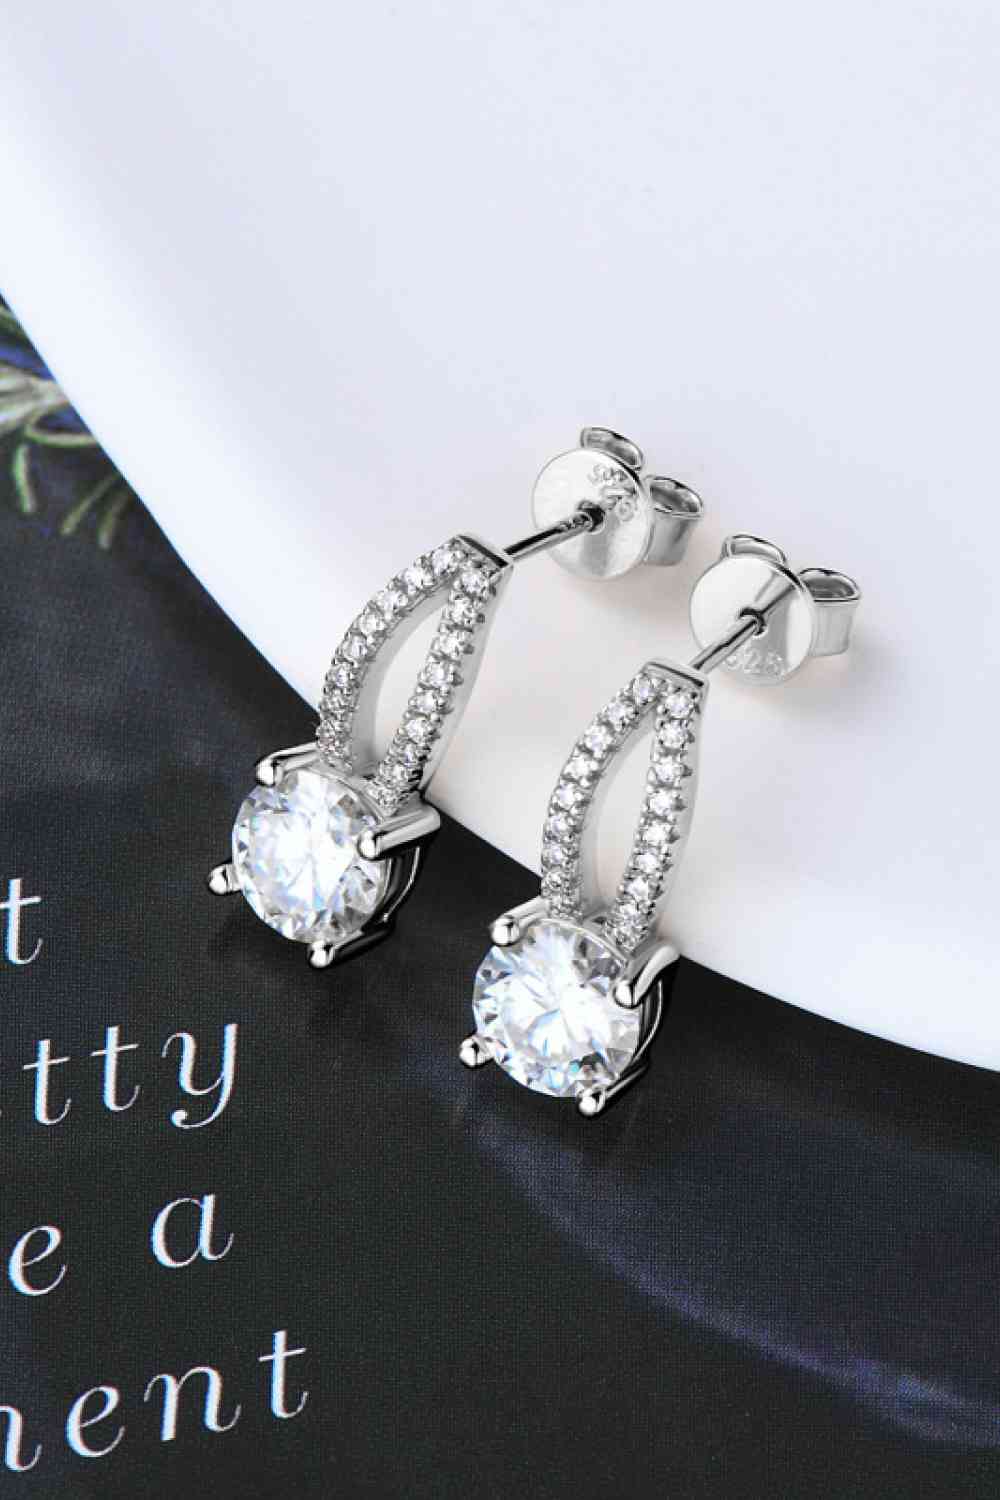 Elegance Earrings 1 Carat Moissanite 925 Sterling Silver